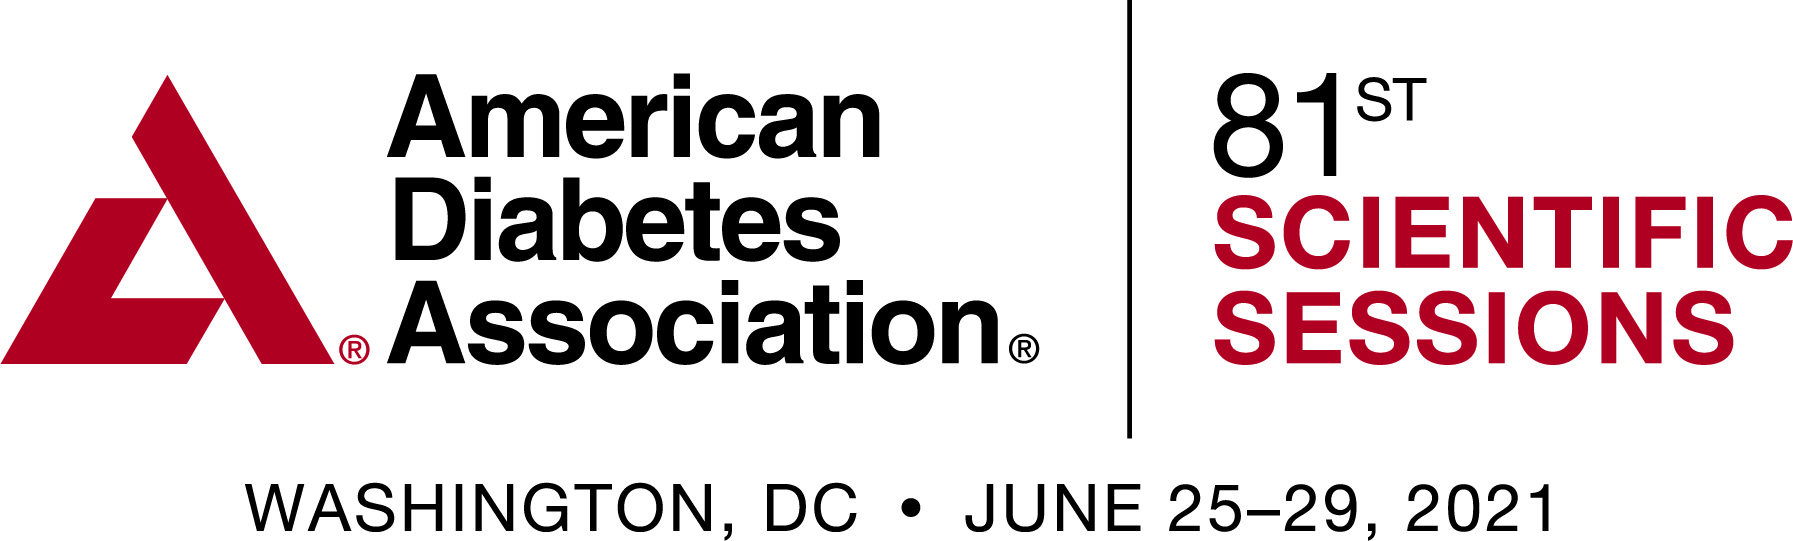 American Diabetes Association Complete Guide to Diabetes - Régikönyvek webáruház